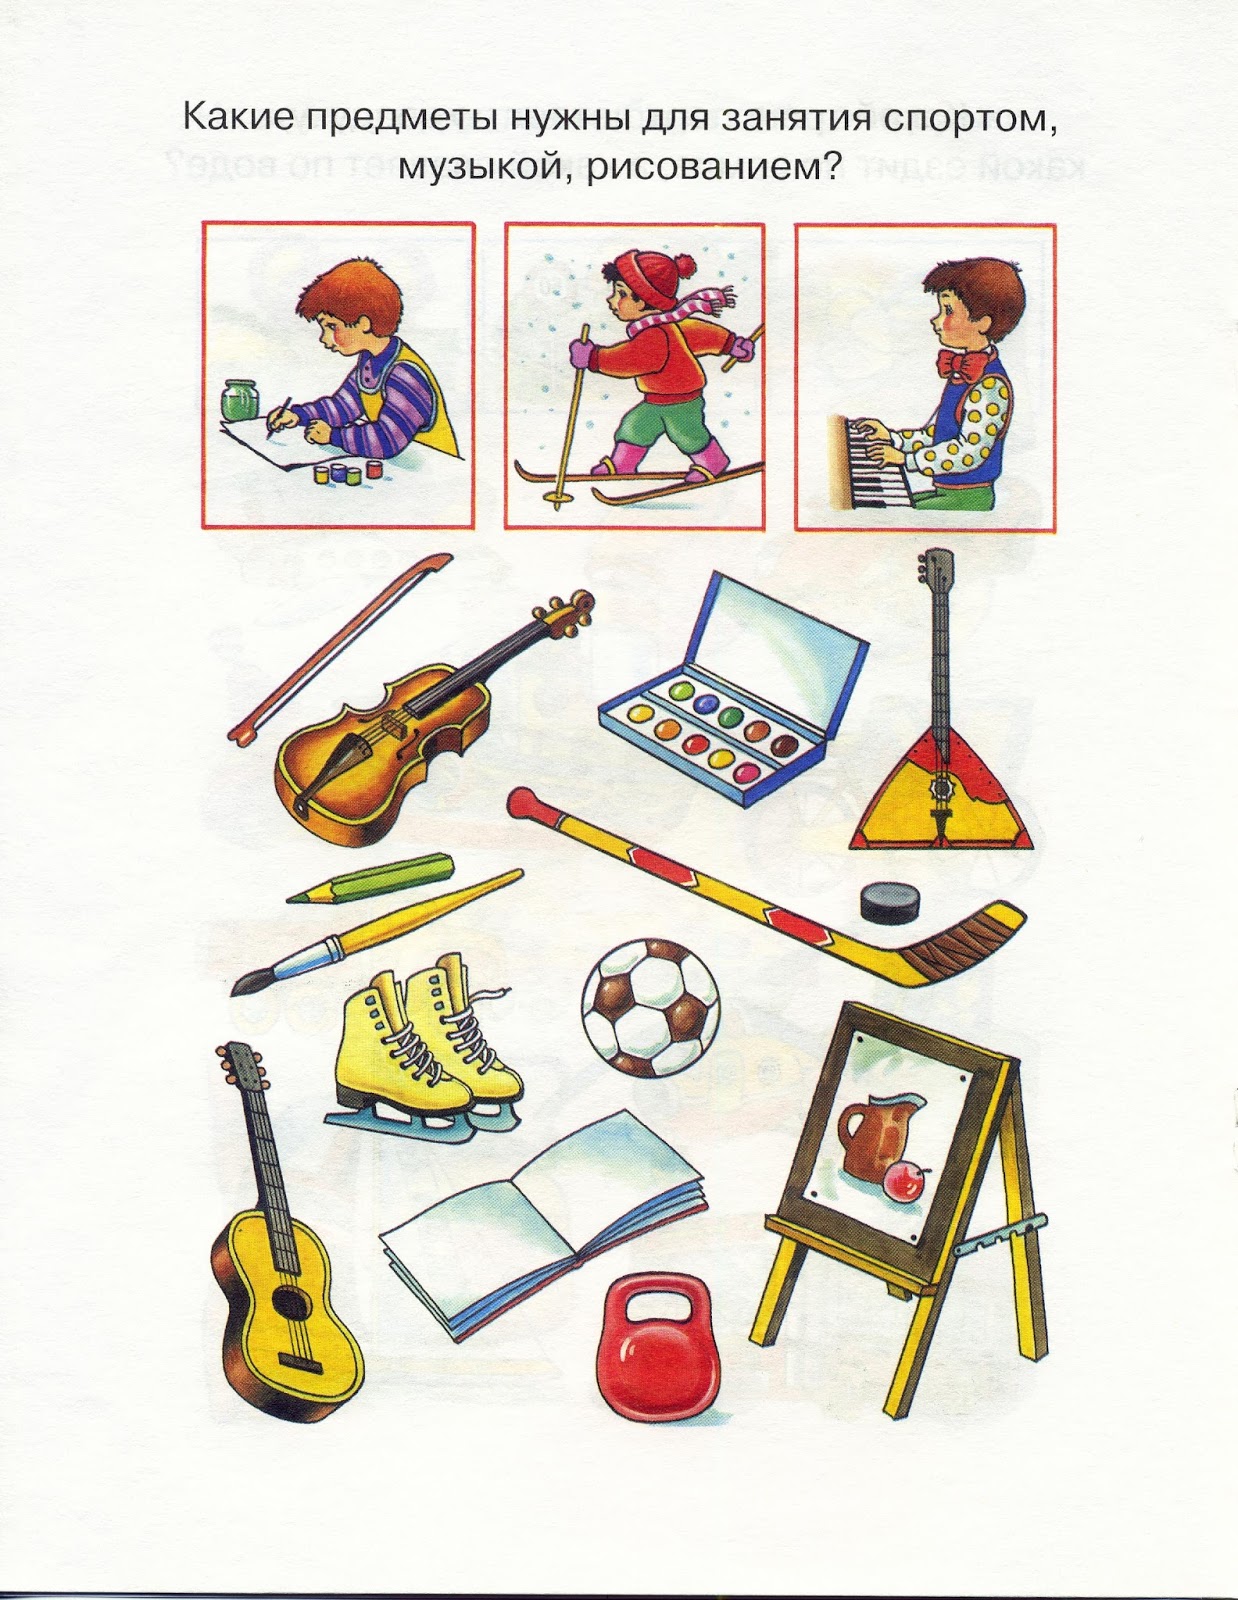 Музыкальные инструменты задачи. Музыкальные инструменты задания для детей дошкольного возраста. Предметный мир для дошкольников. Музыкальные инструменты логопедическое занятие. Профессии задания для детей 3-4 лет.